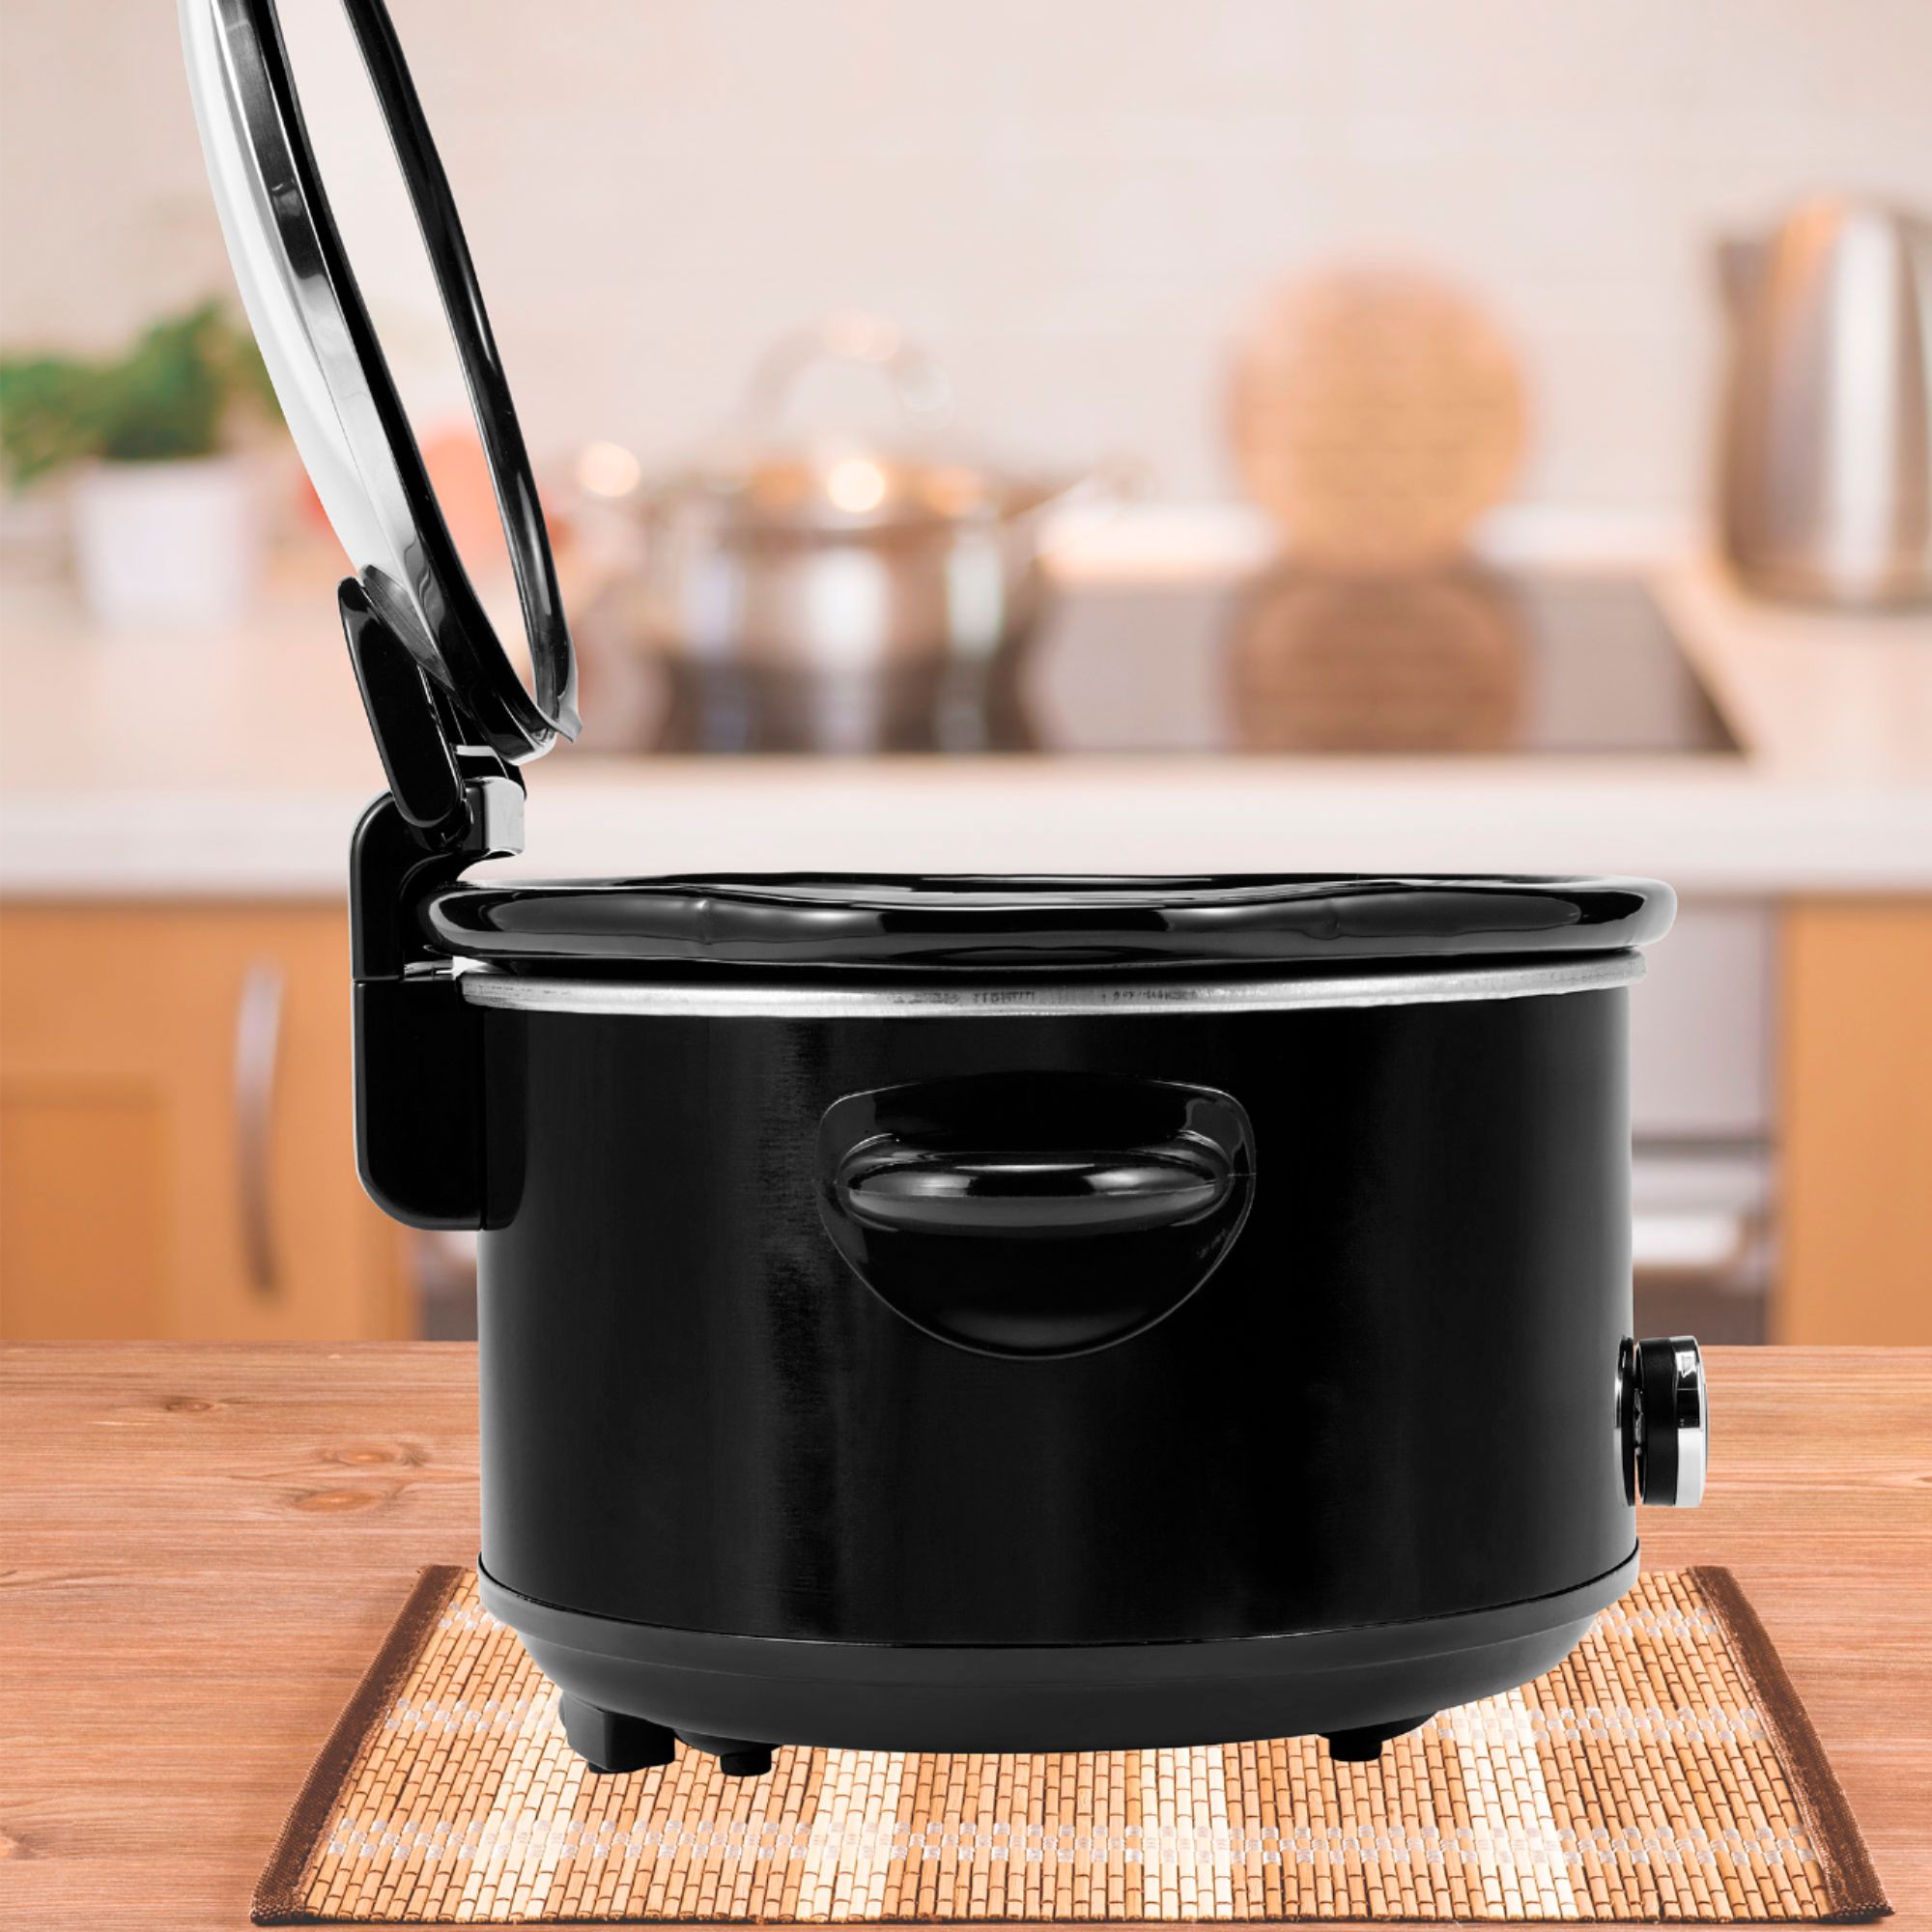 Crock-Pot (SCCPVP450H-B) 4.5-Quart Lift & Serve Programmable Slow Cooker  Reviews, Problems & Guides